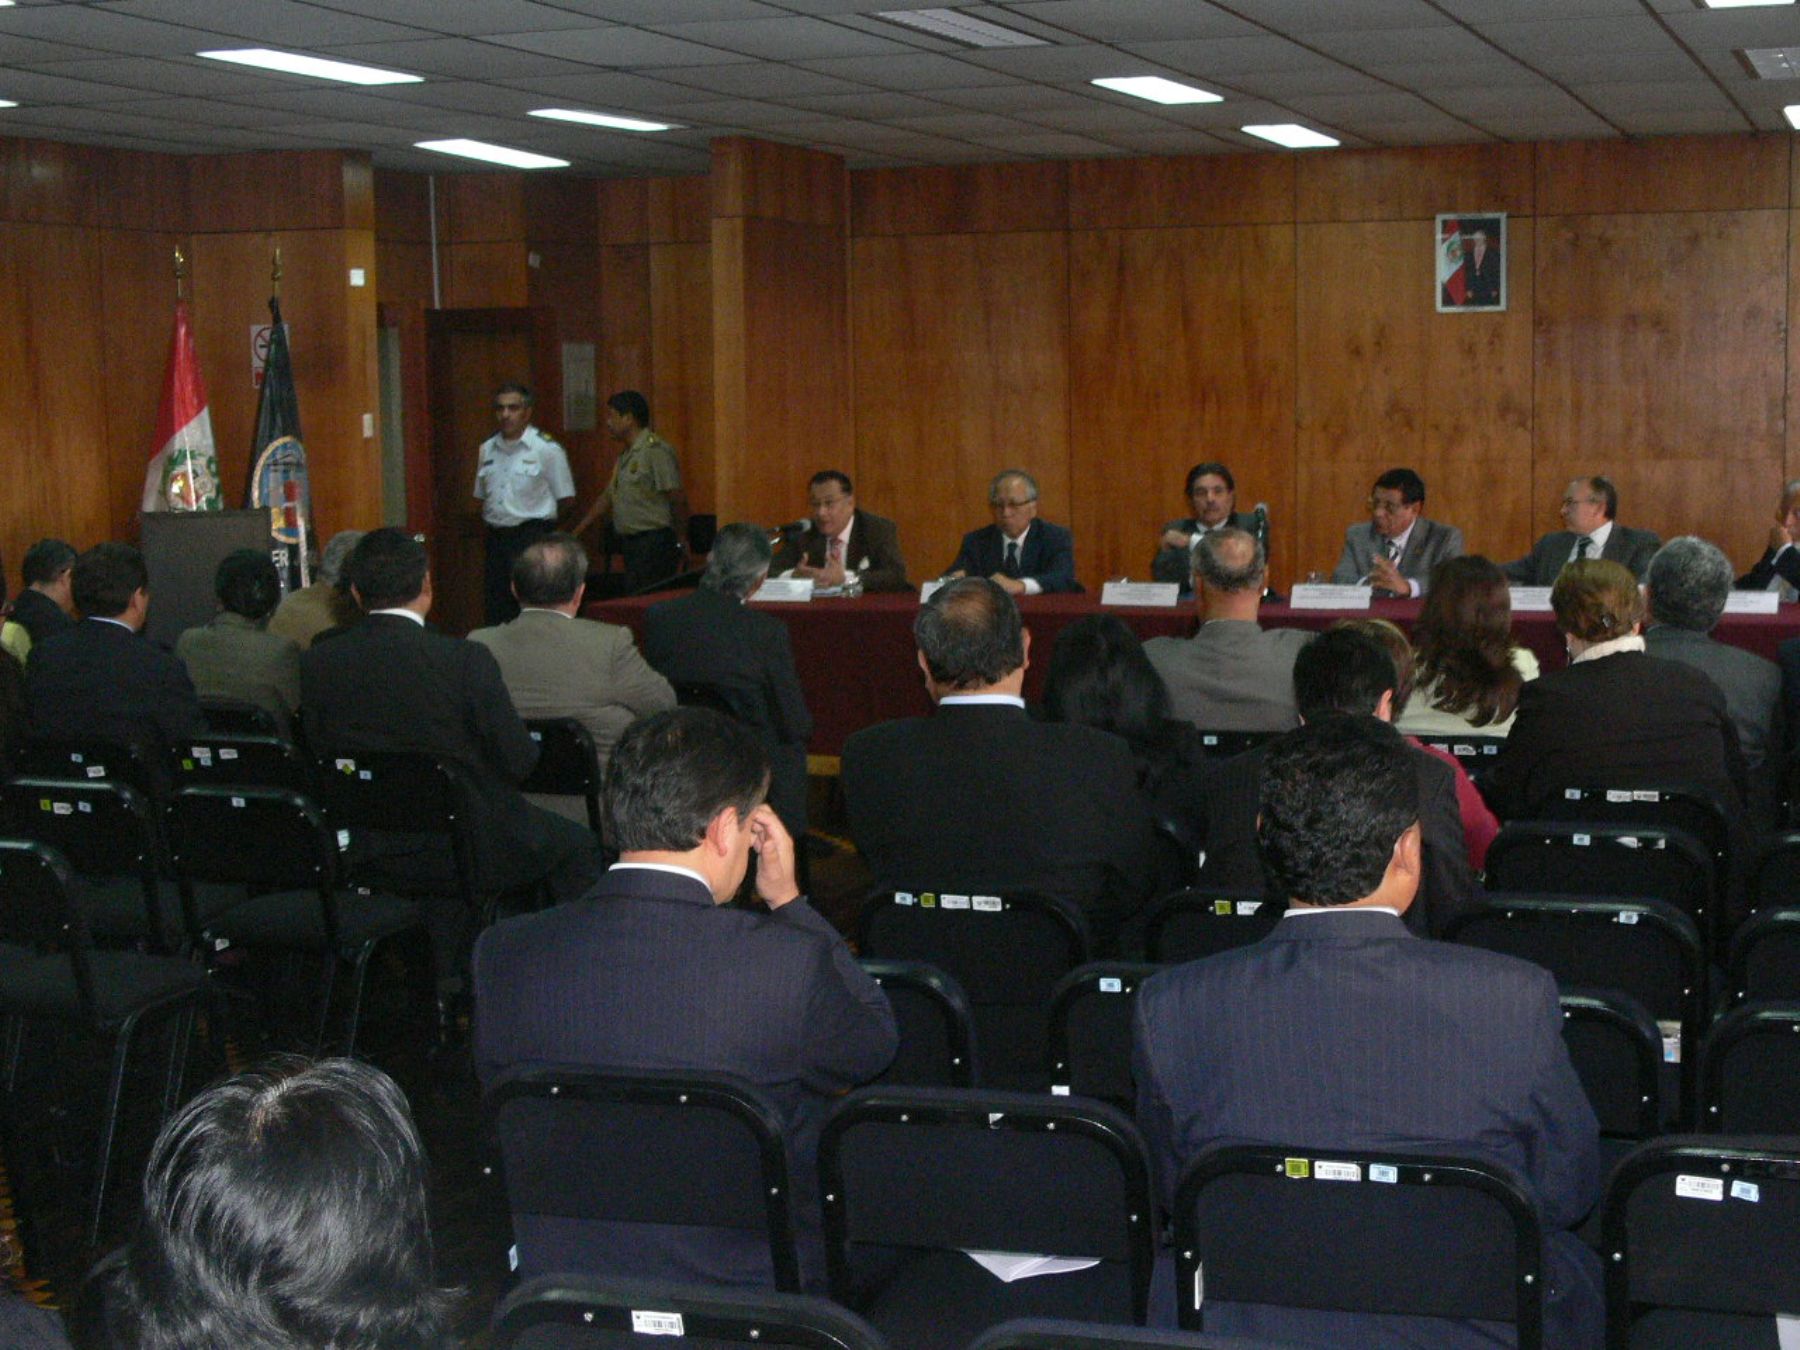 Audiencia pública organizada por el CNM en la Corte de Lima. Foto: Corte de Lima.